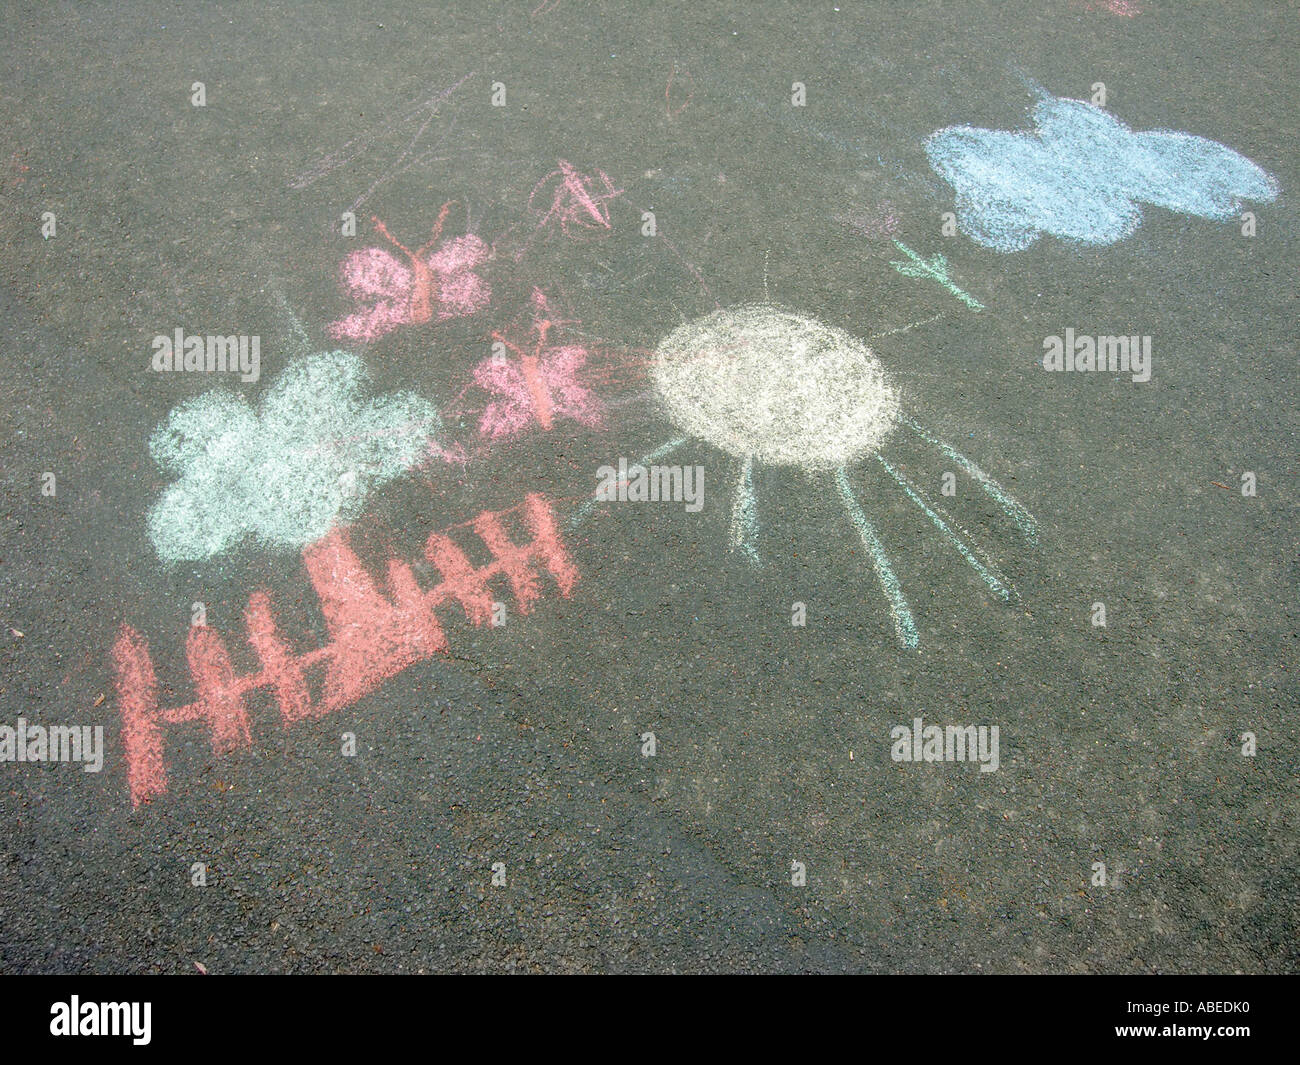 Il disegno dei bambini i bambini con immagini contenenti sun cloud recinzione ad albero farfalle su una strada con asfalto nero superficie Foto Stock